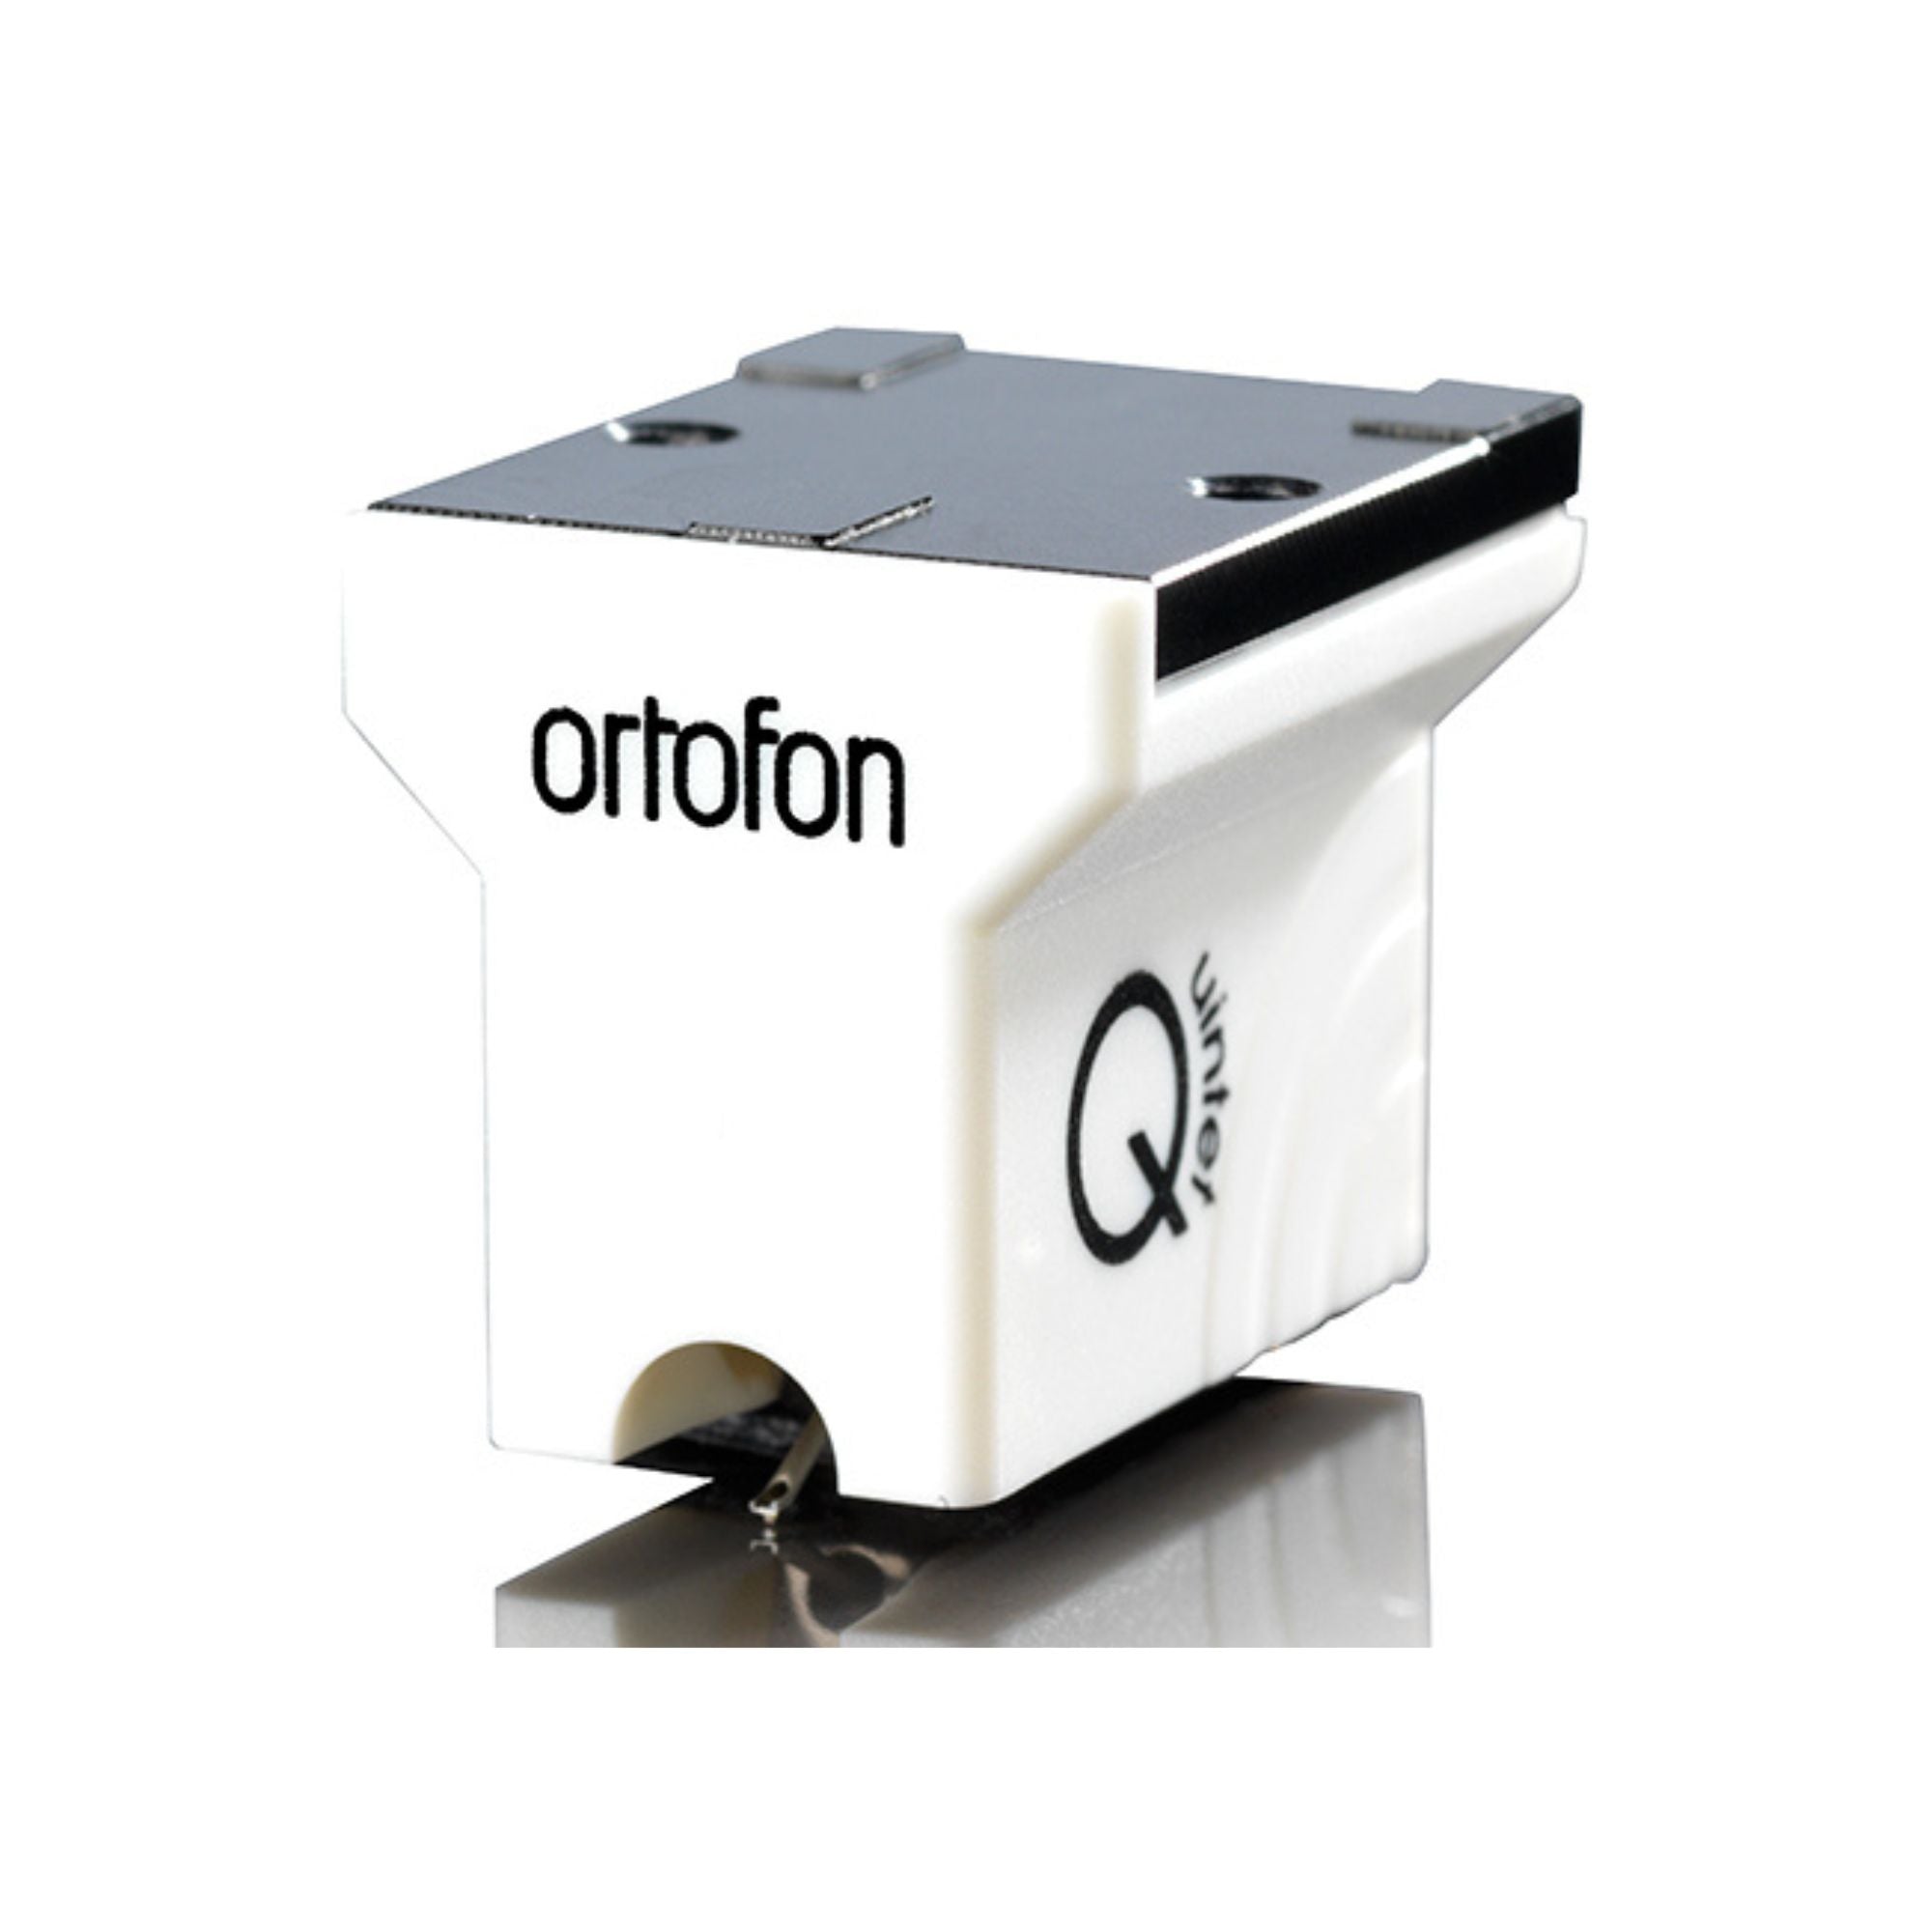 Ortofon MC Quintet Mono, Ortofon, Turntable Accessories - AVStore.in